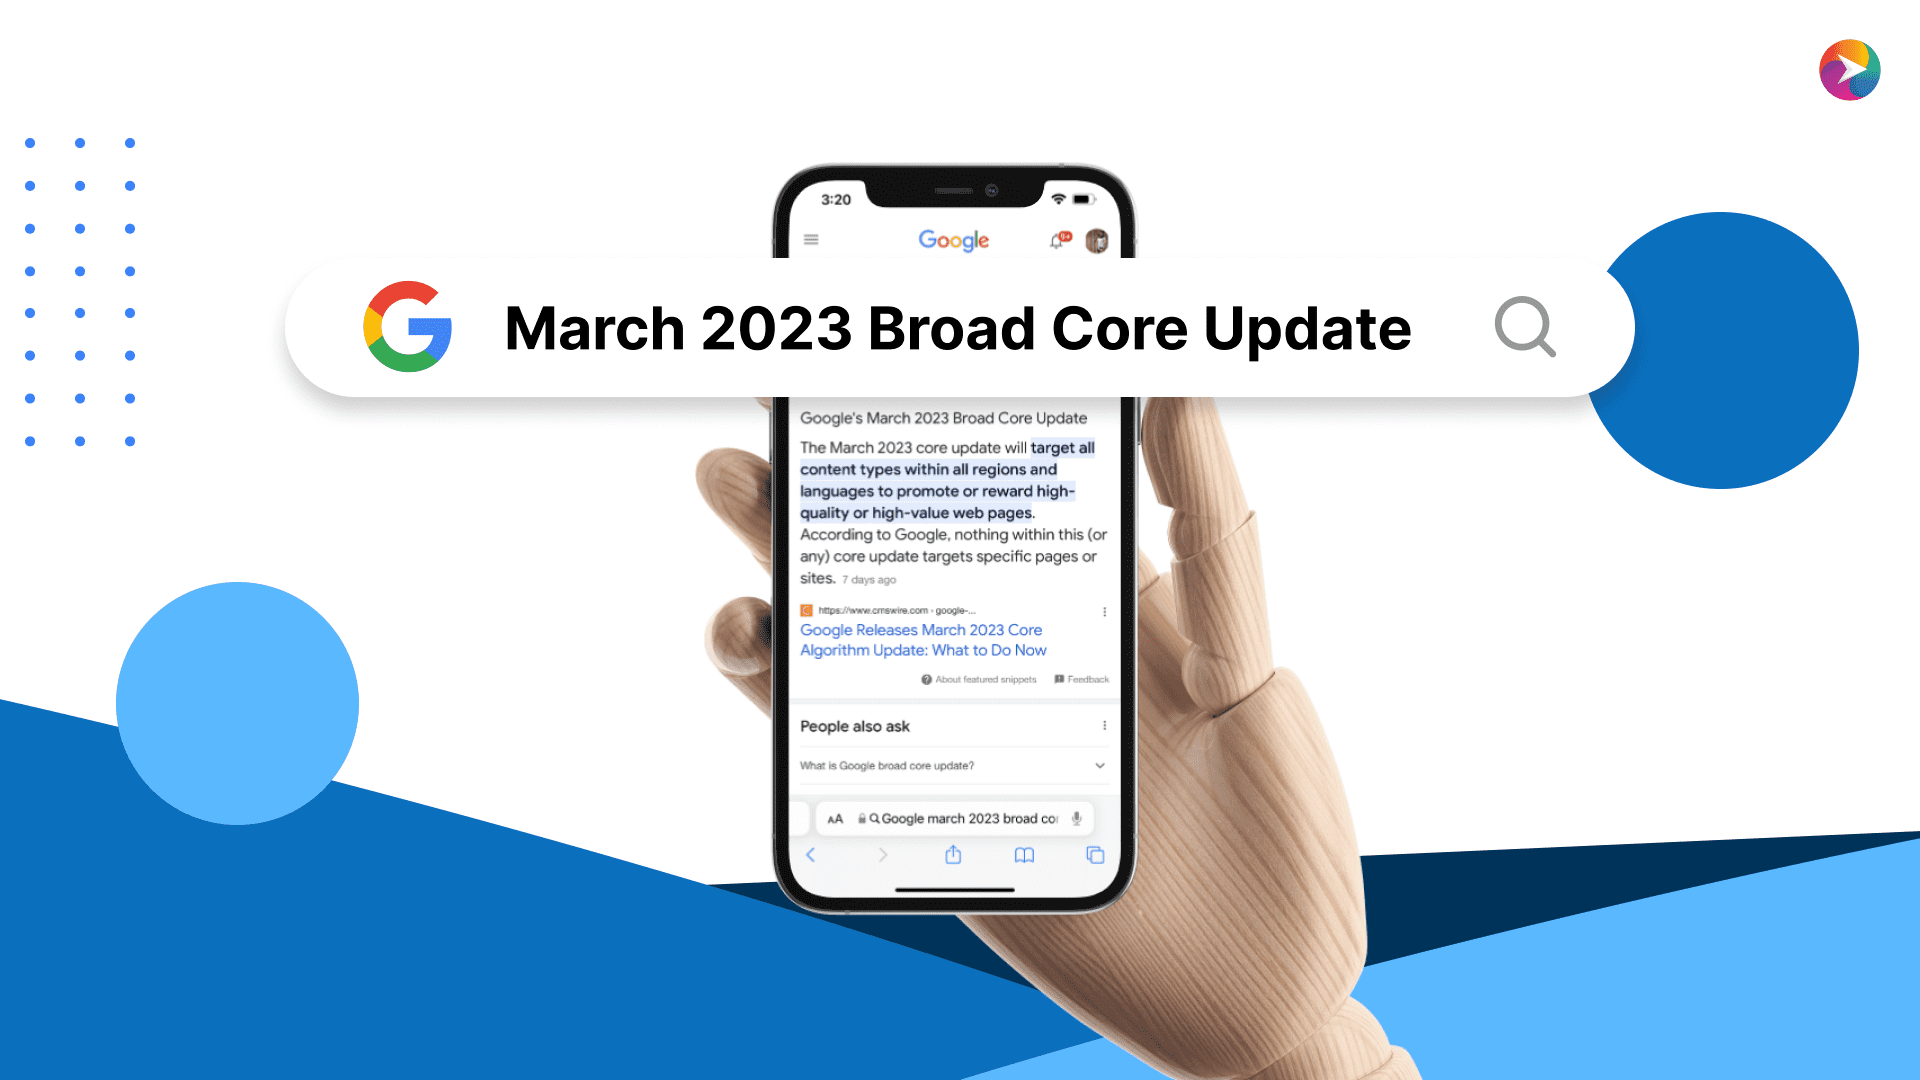 March 2023 Broad Core Update